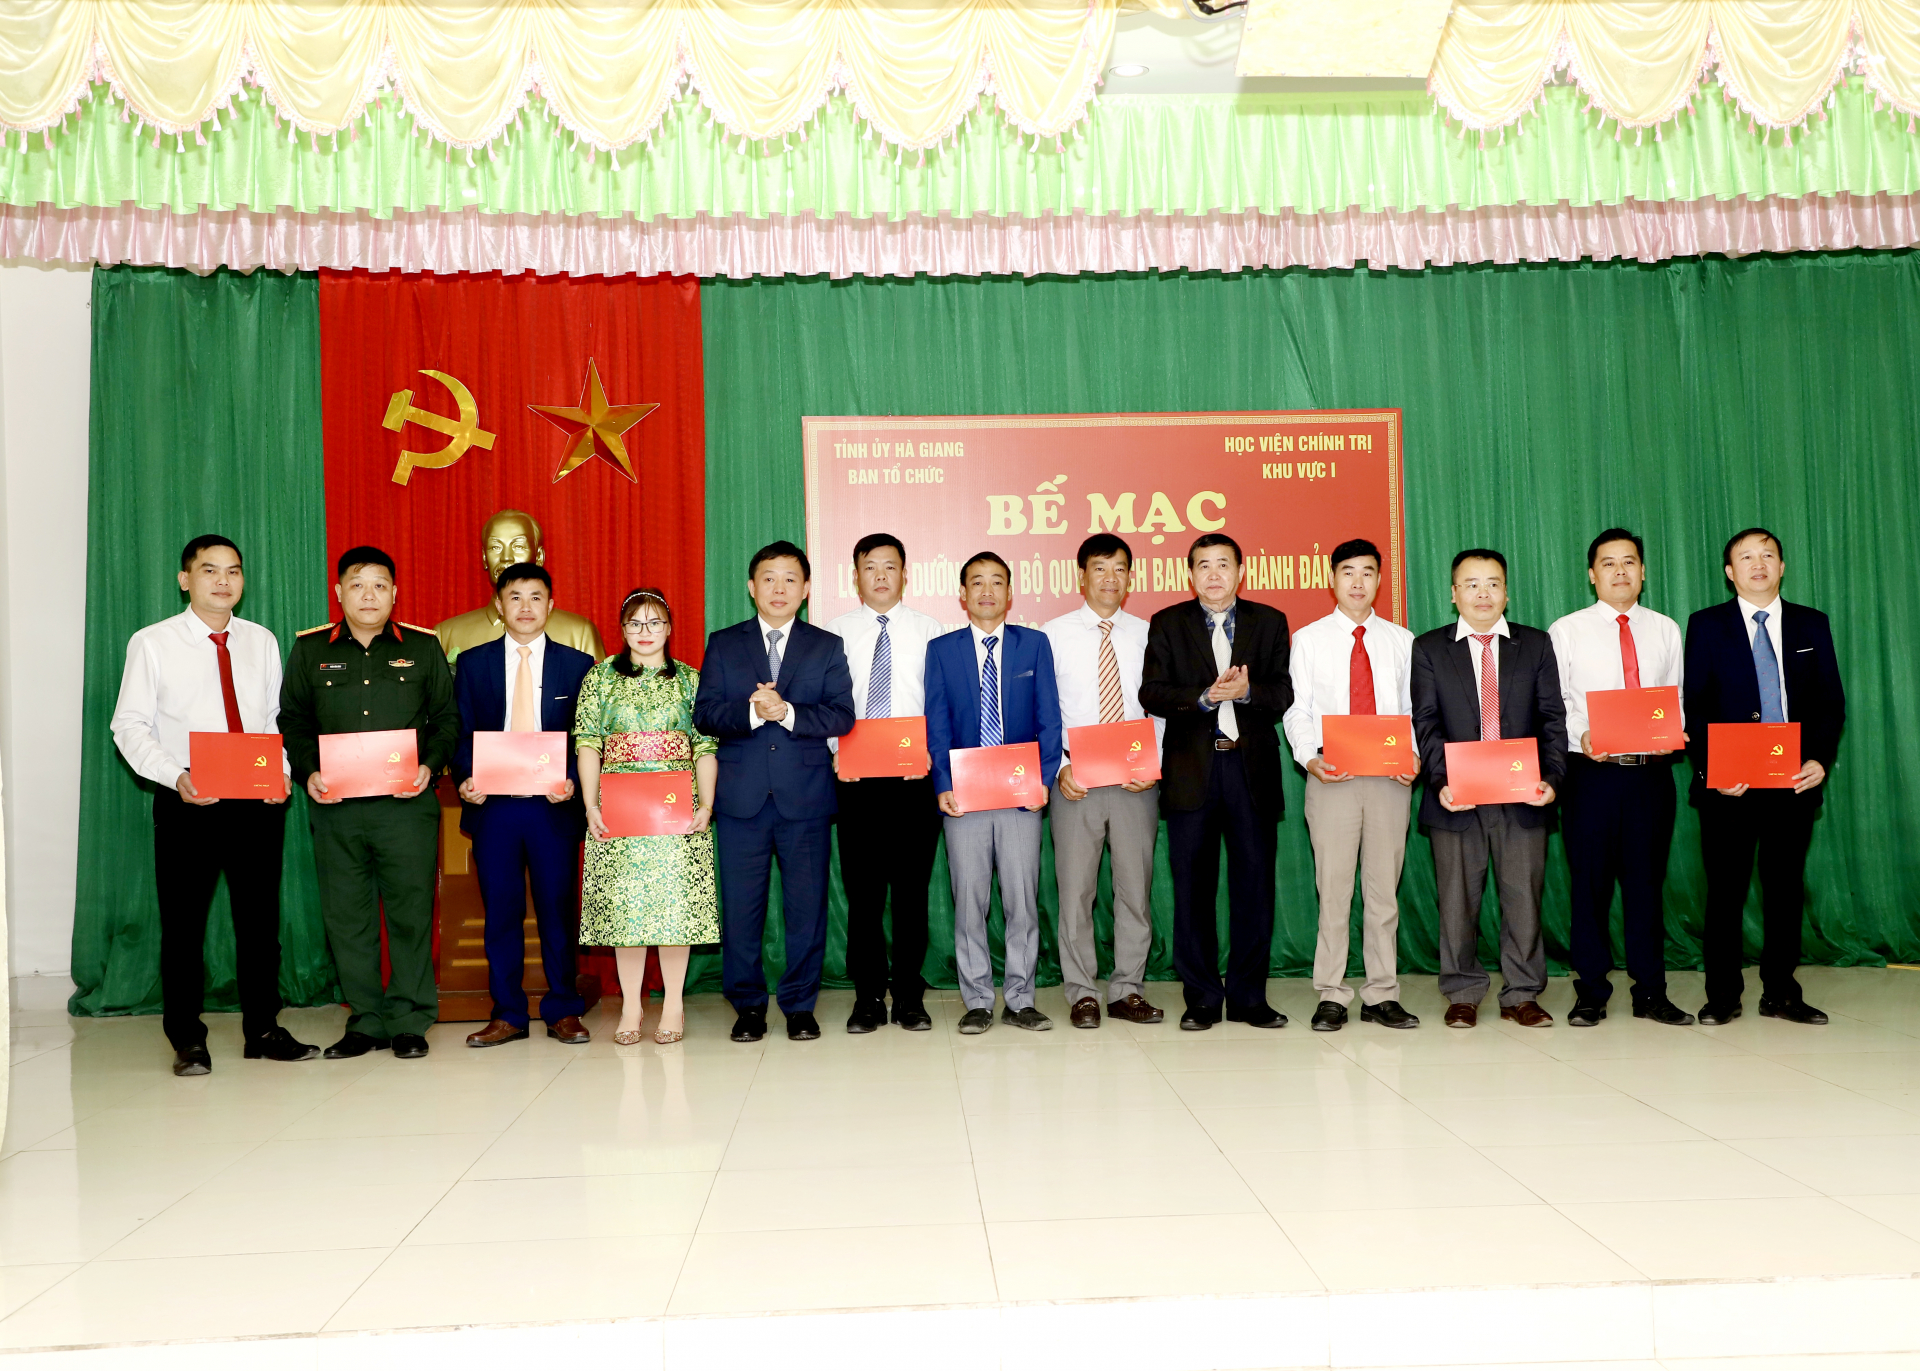 Giám đốc Học viện Chính trị khu vực I và lãnh đạo Ban Tổ chức Tỉnh ủy trao Giấy chứng nhận cho các học viên